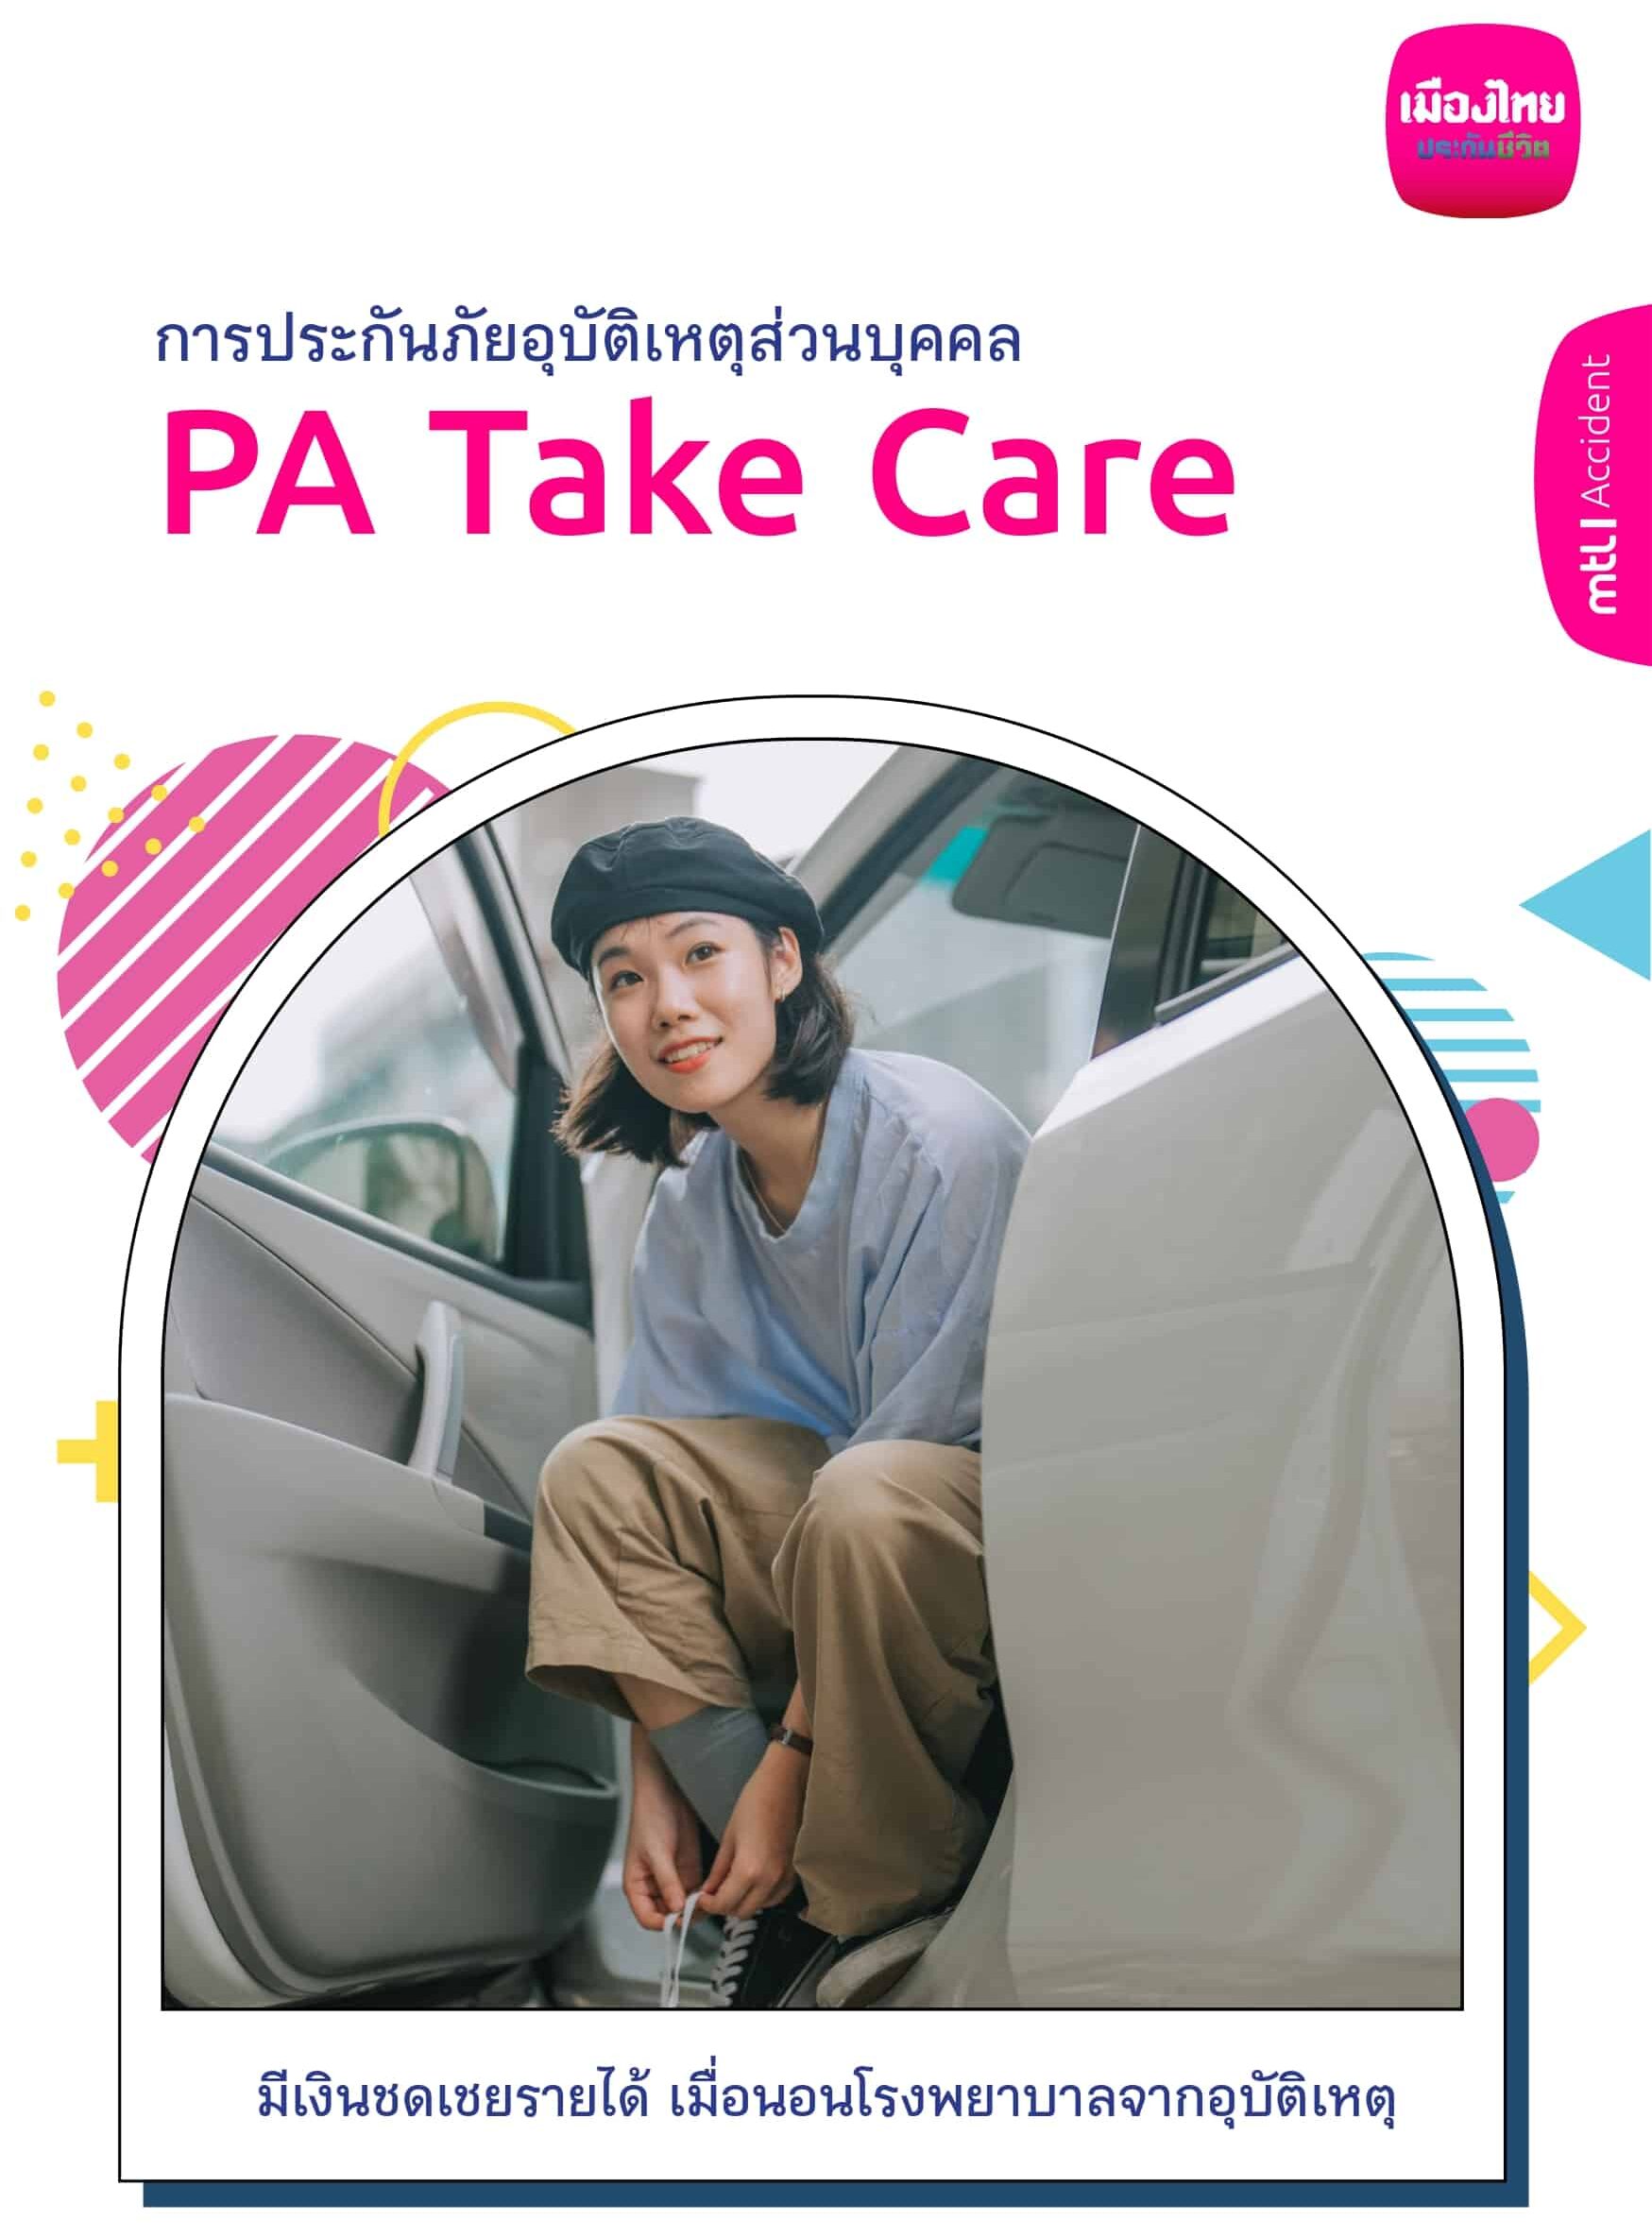 PA Take Care